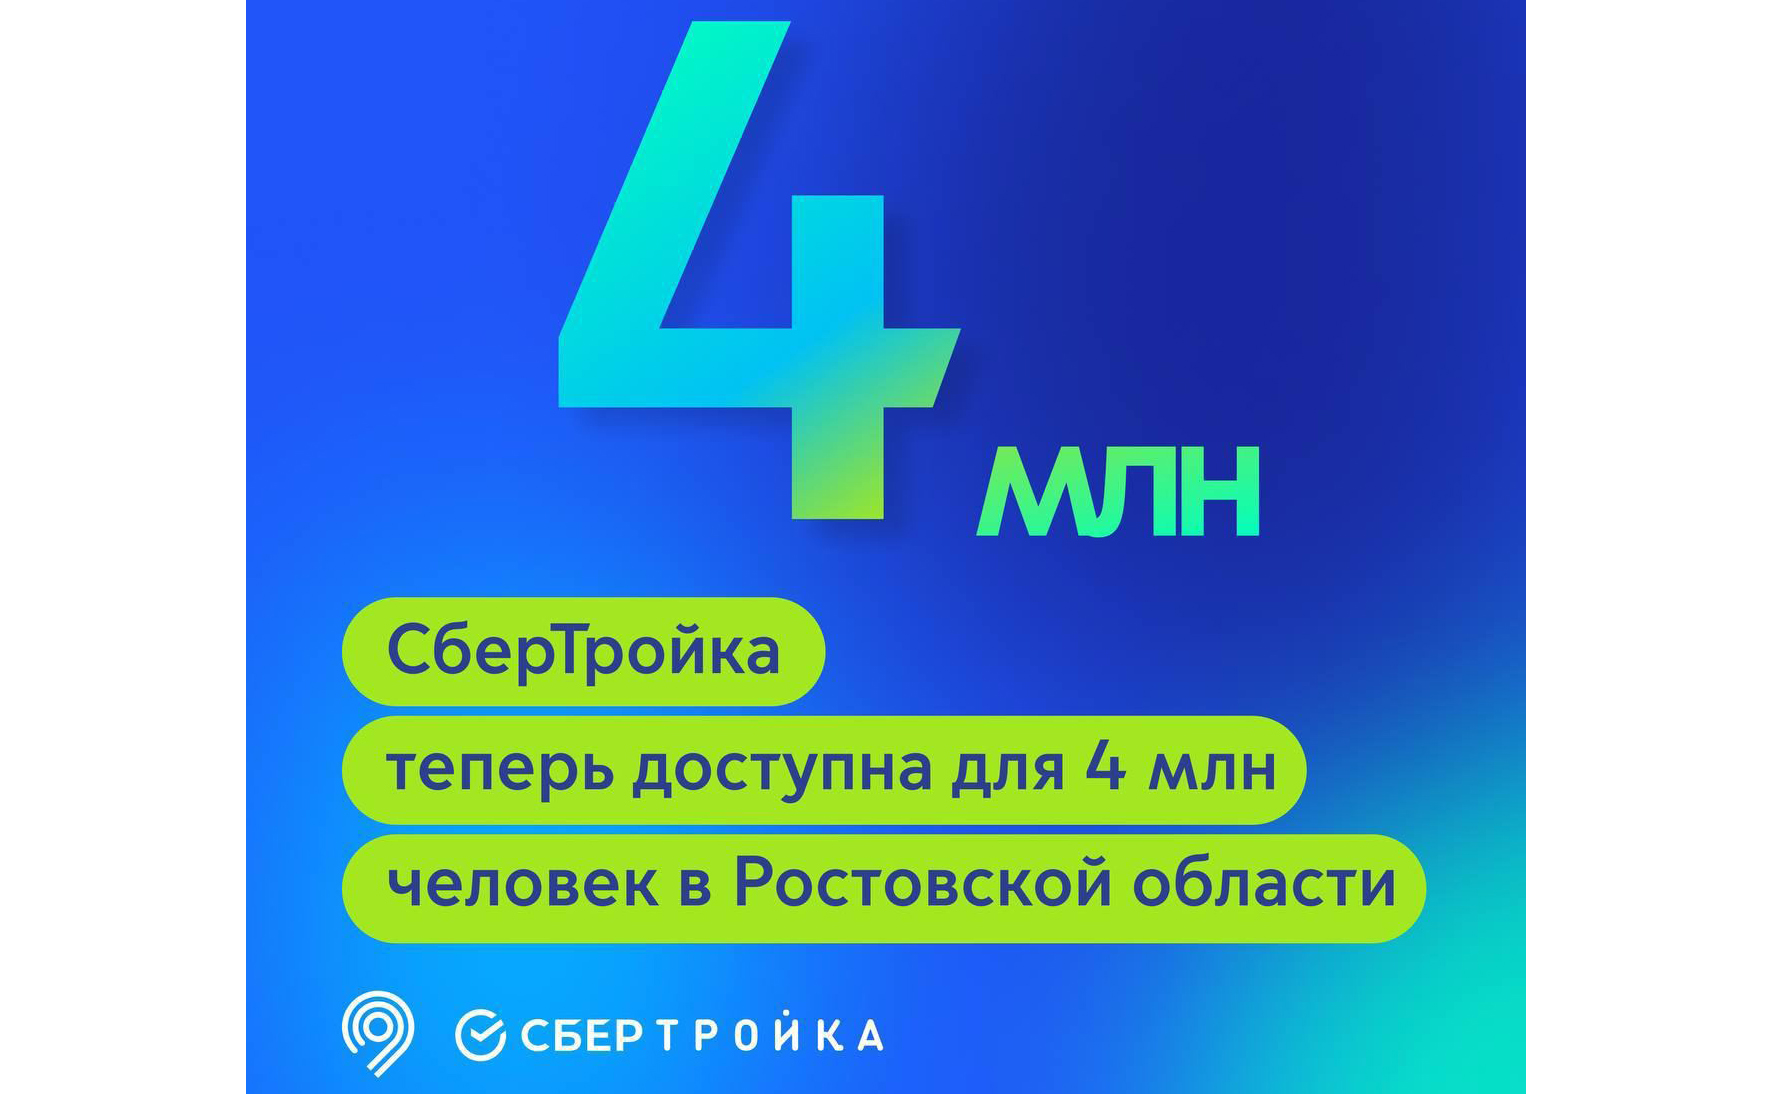 В 90% городского транспорта Ростовской области заработала билетная система СберТройка